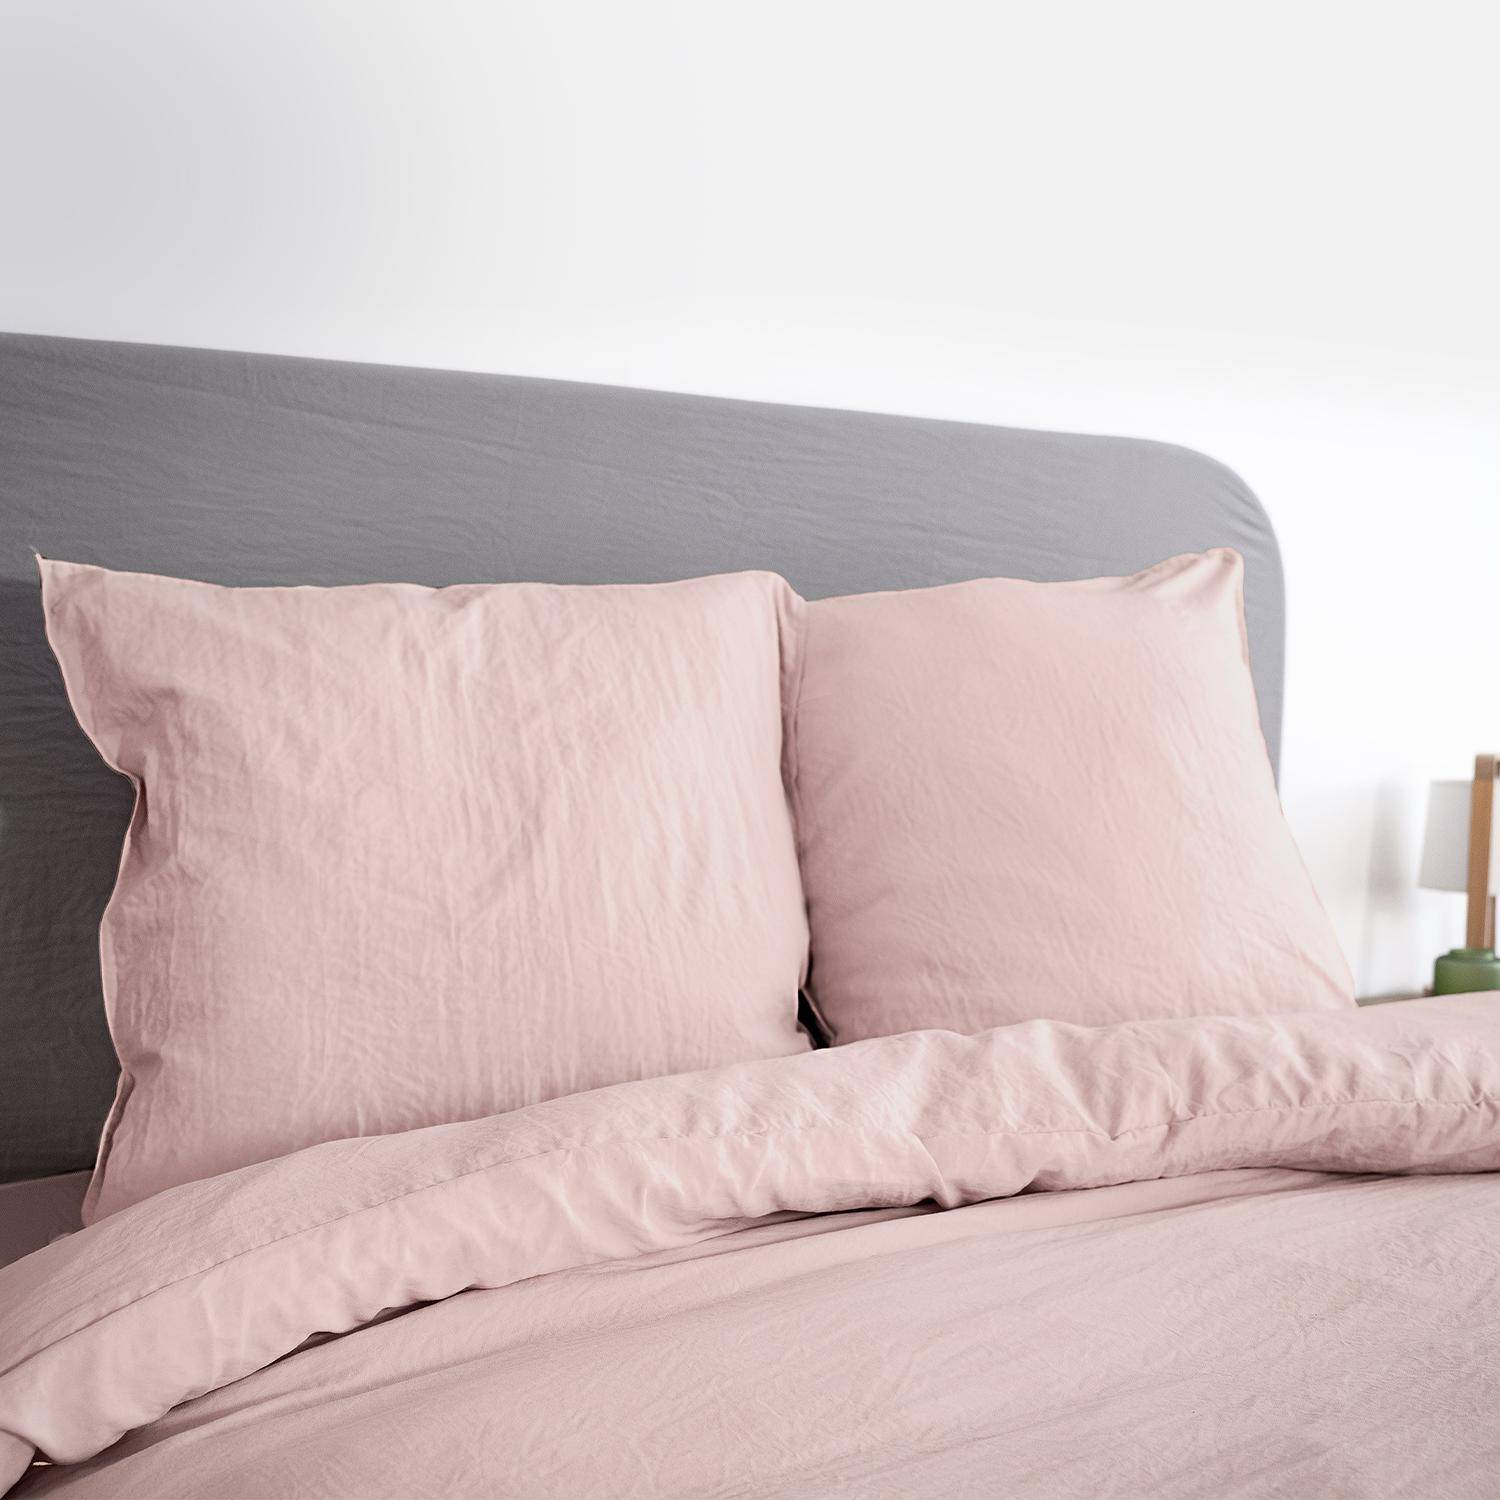 Bettwäsche-Set aus vorgewaschener Mikrofaser in rosa 240 x 220 cm für Doppelbetten, 1 Bettbezug und 2 Kissenbezüge,sweeek,Photo1